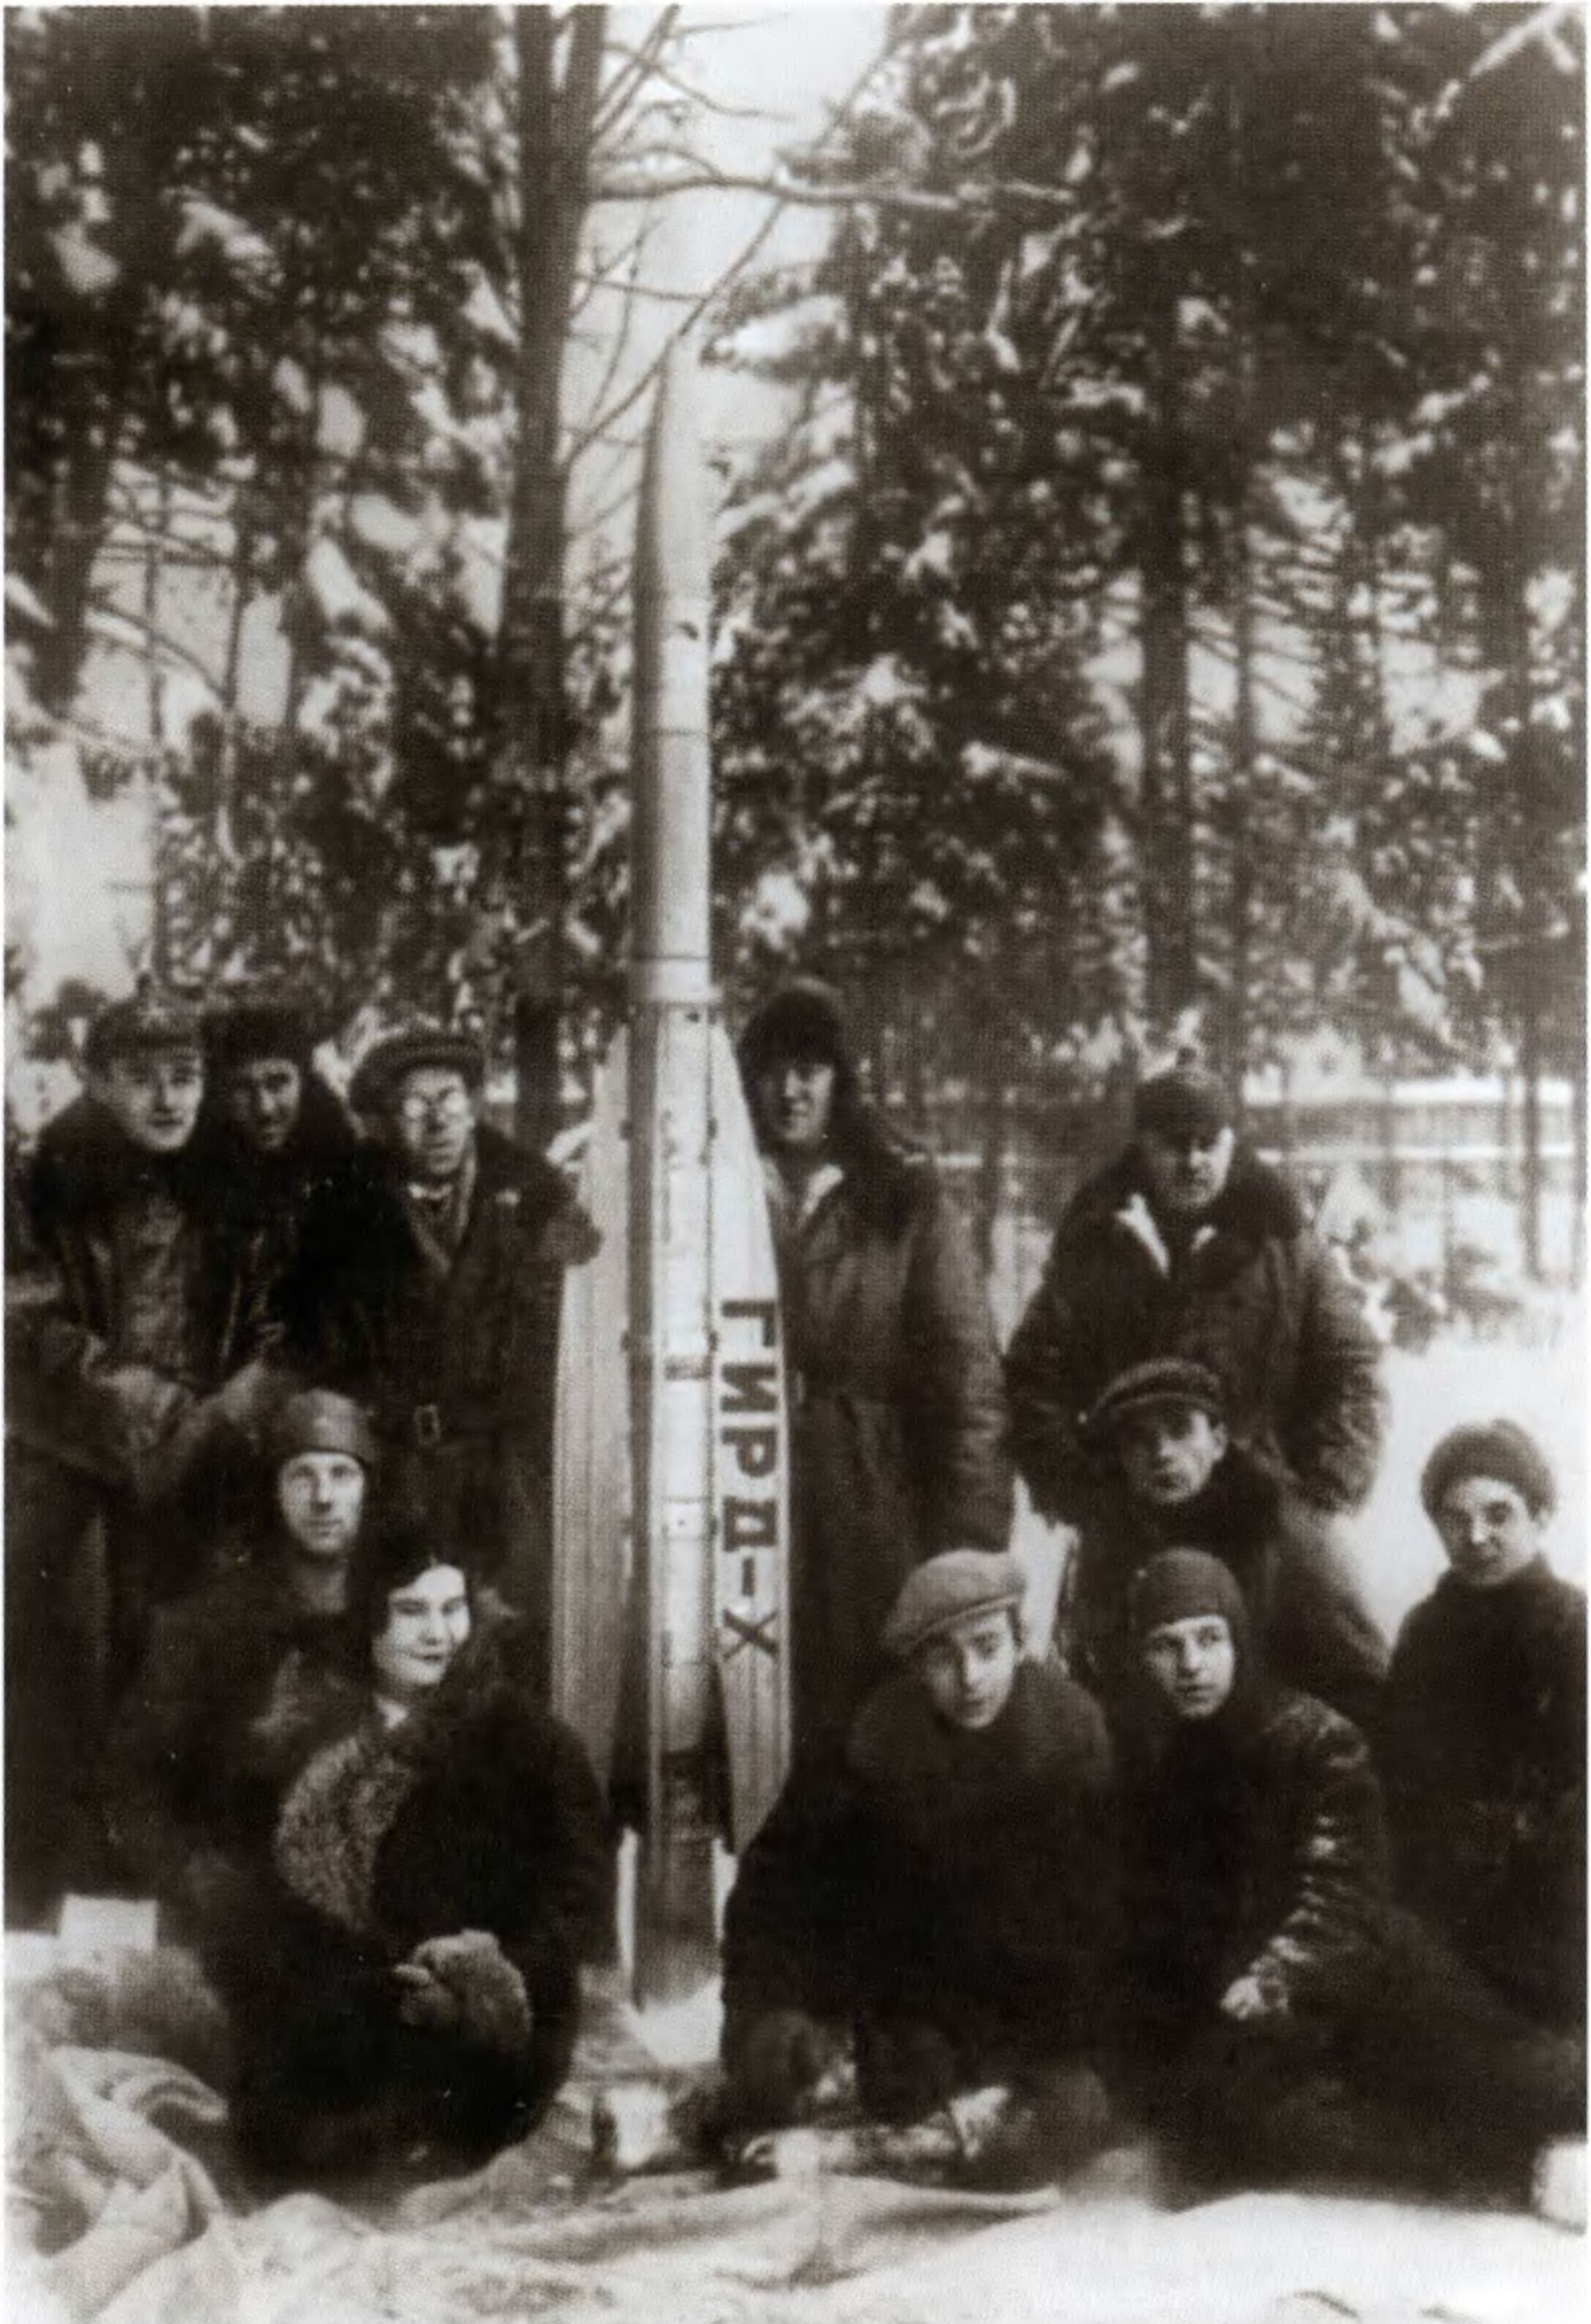 С.П. Королев и сотрудники ГИРД (Группы изучения реактивного движения) перед запуском ракеты «ГИРД-Х». Нахабино. 25 ноября 1933 г